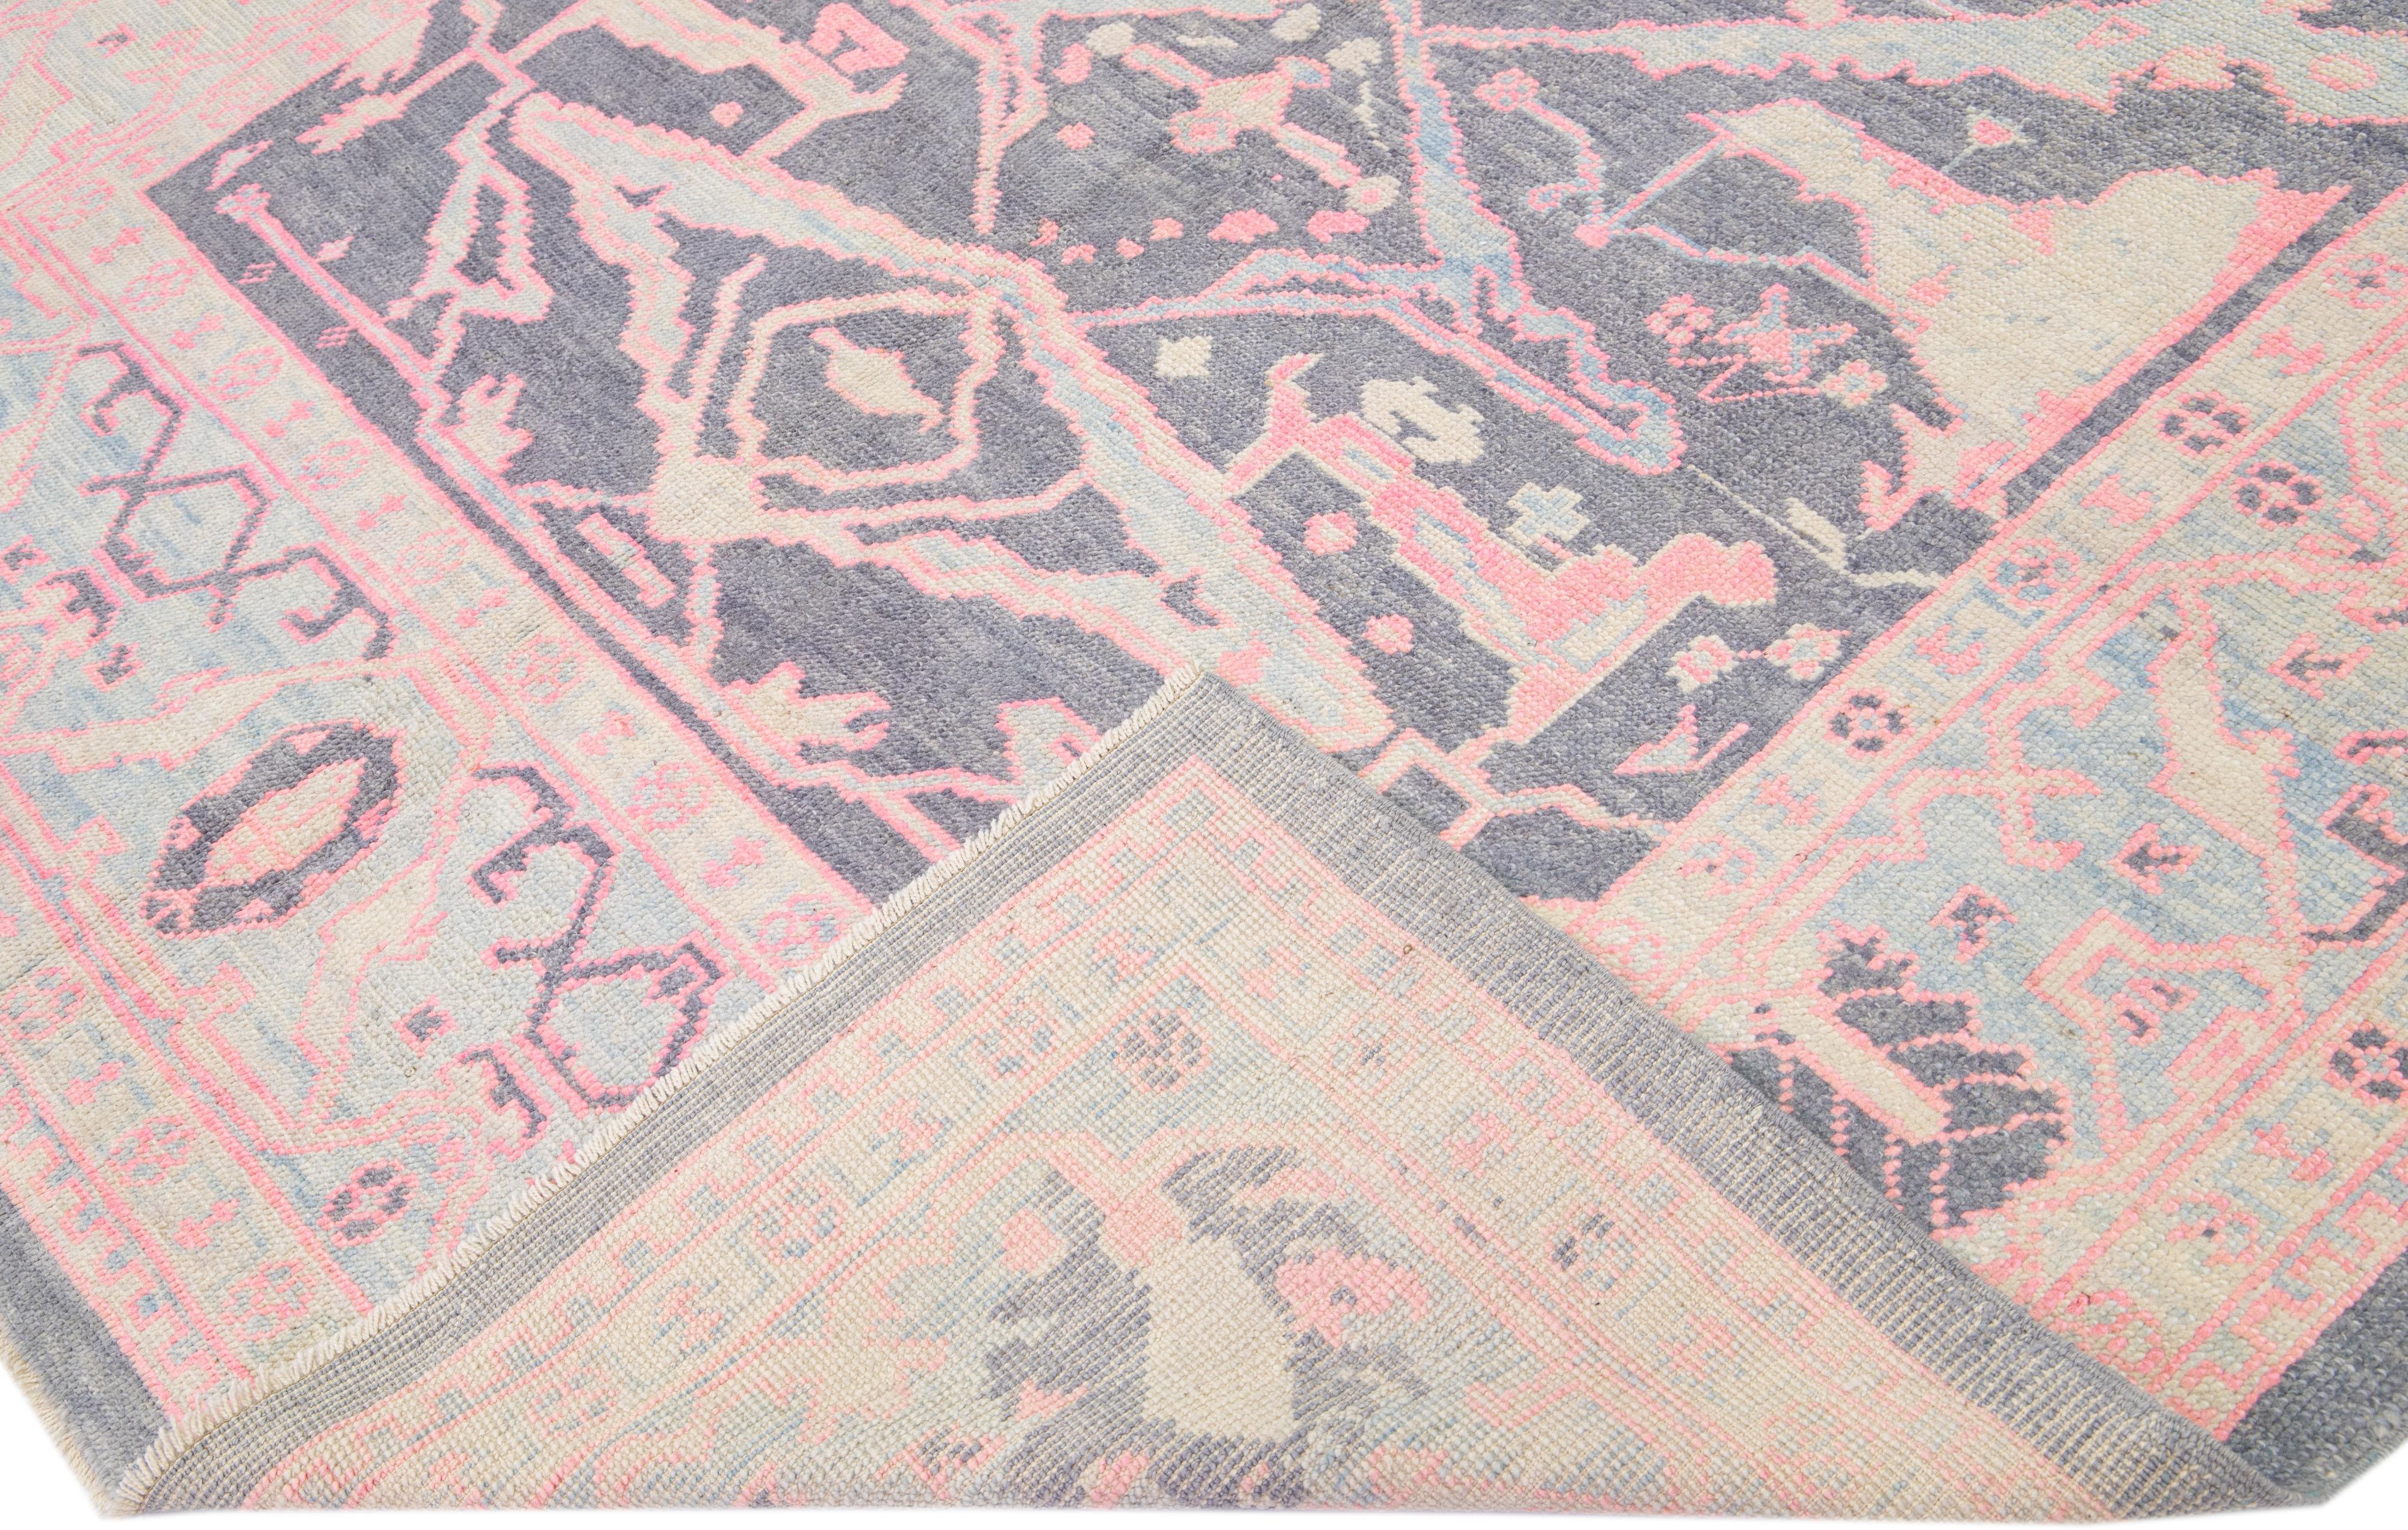 Magnifique tapis turc moderne en laine Oushak nouée à la main avec un champ de couleurs gris et rose dans un magnifique motif floral.

Ce tapis mesure : 7'10